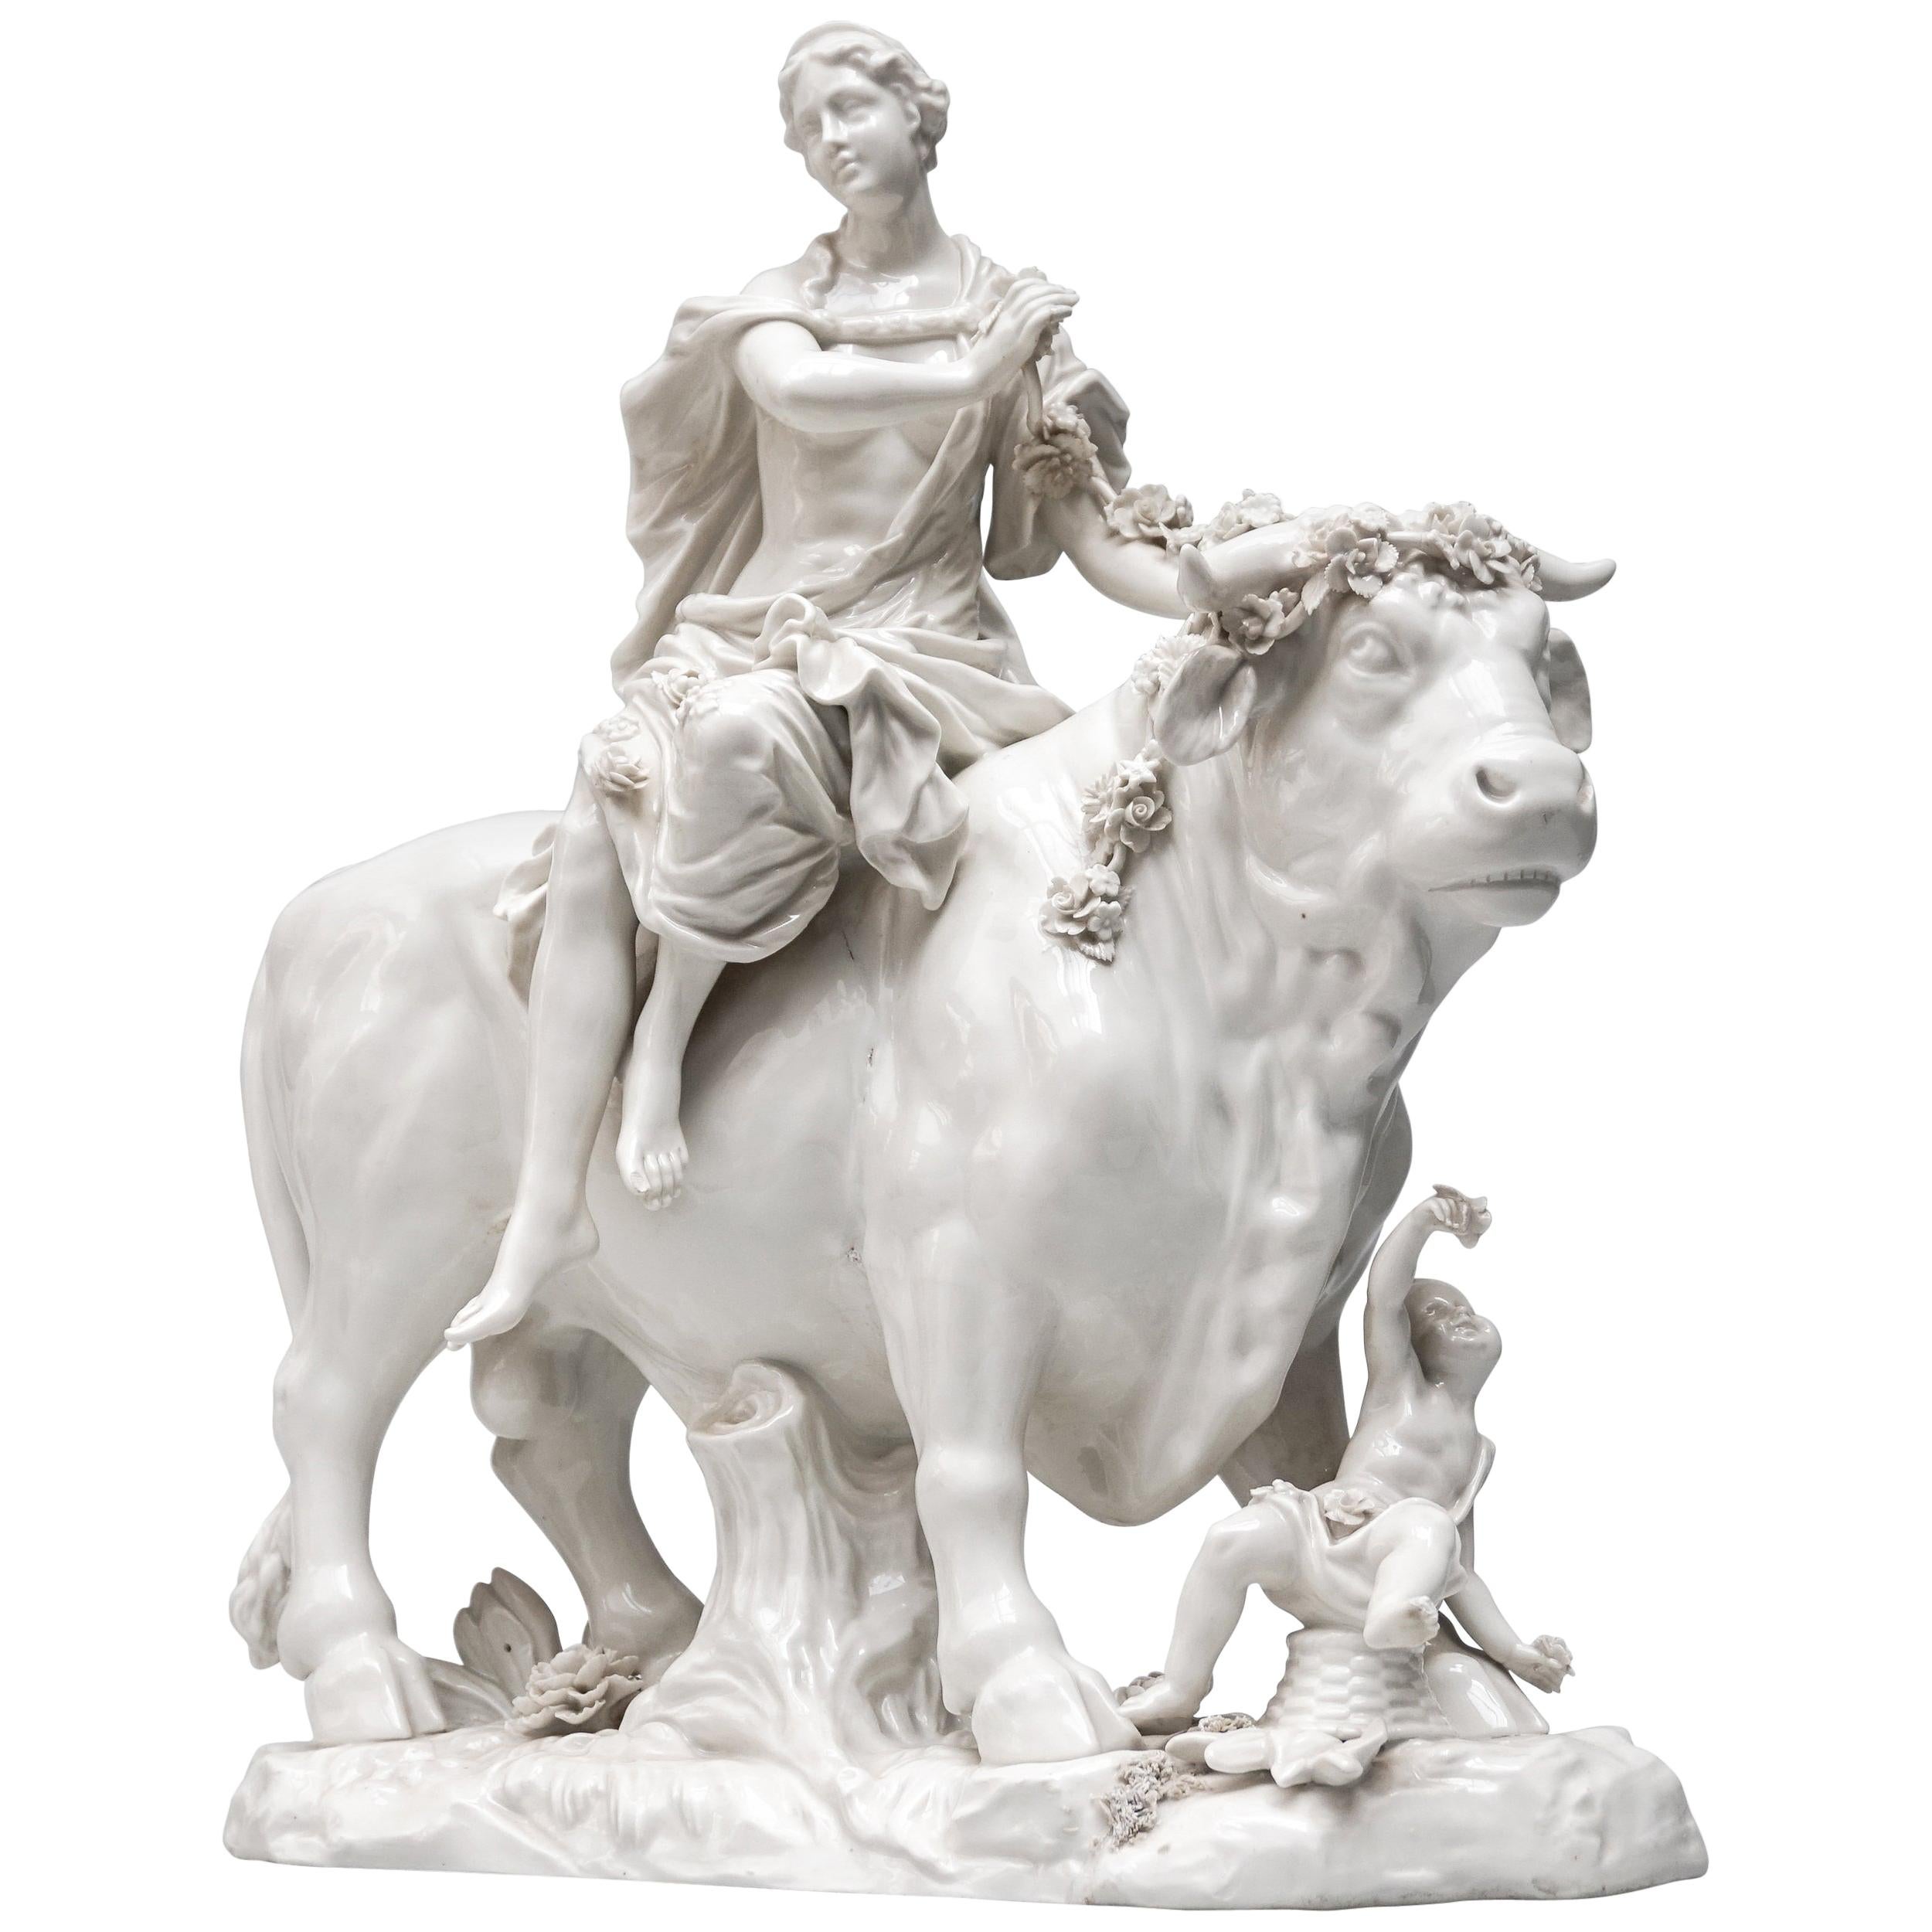 Wiener figurales Porzellan des 18. Jahrhunderts Griechische Mythologie-Gruppe von Europa und Zeus im Angebot